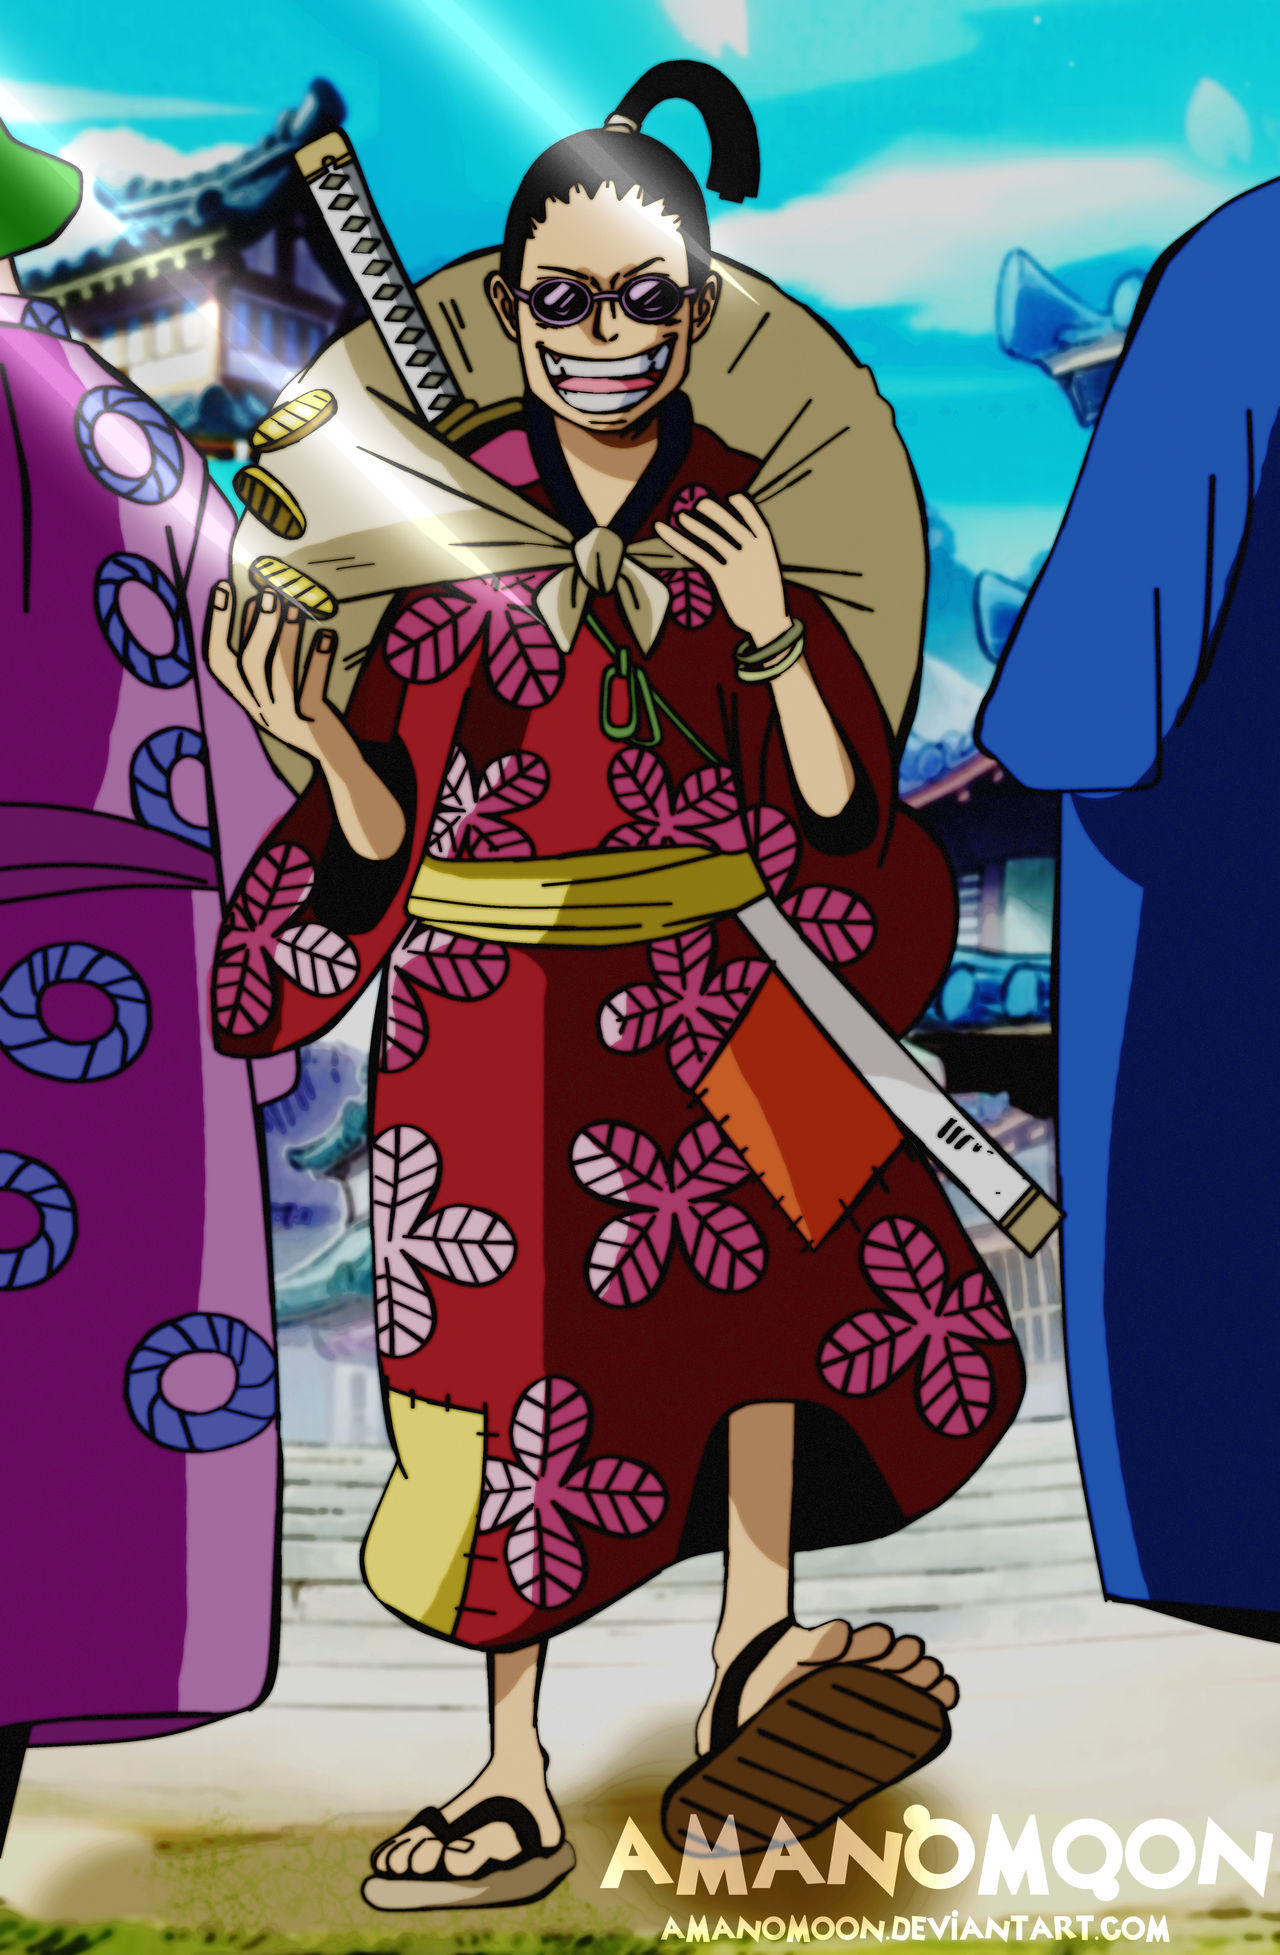 One Piece Chapter 960 Denjiro Oden Vs Bord Wano By Amanomoon On Deviantart